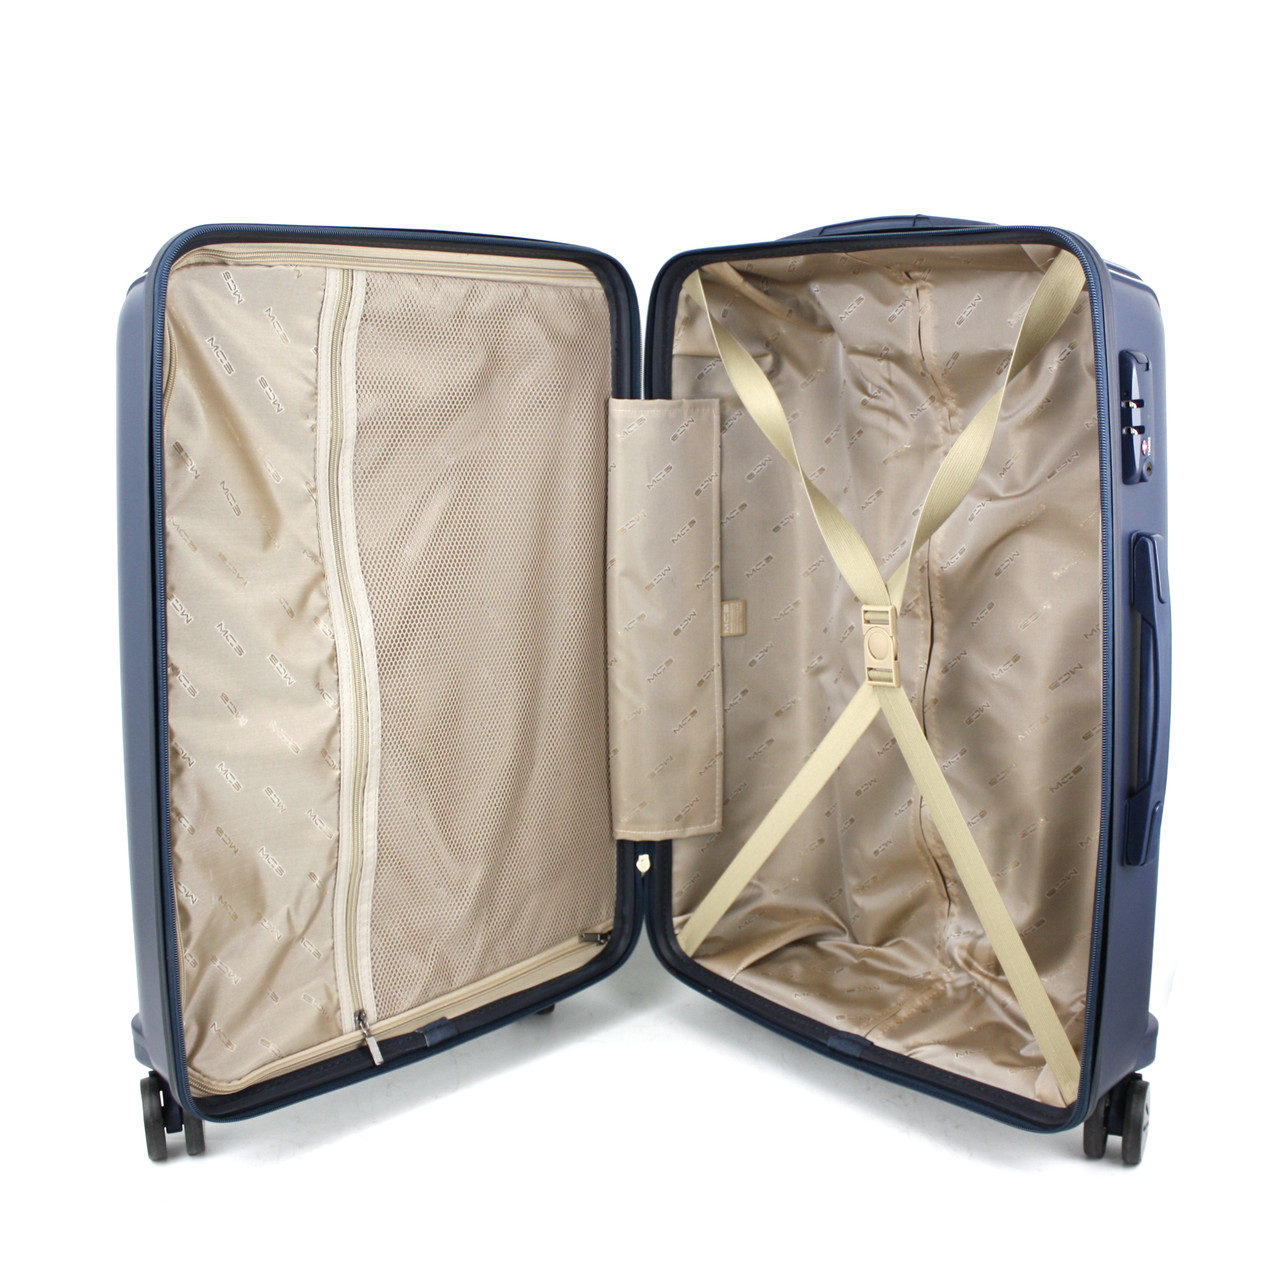 Маленький чемодан для ручьной клади из полипропилена MCS V305 S DARK BLUE! Для 8-10 кг! - 2